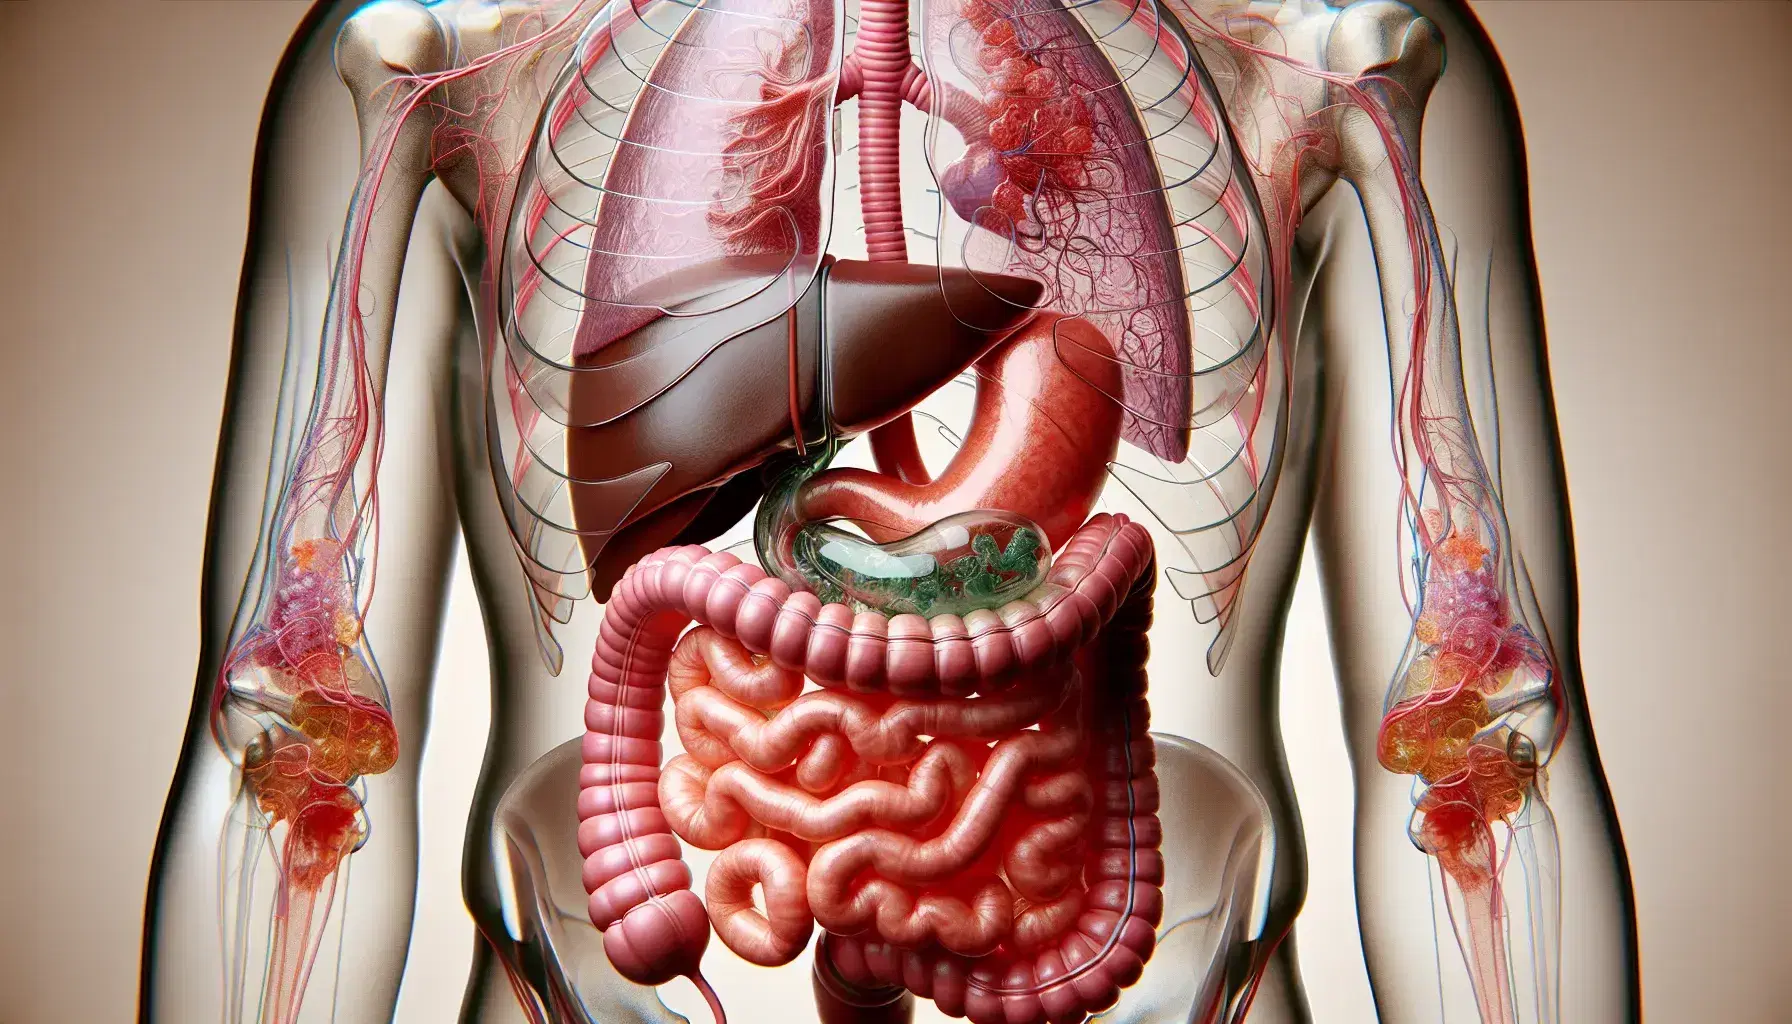 Vista anatómica del sistema digestivo humano con torso transparente mostrando esófago, estómago, intestinos delgado y grueso, hígado y vesícula biliar.